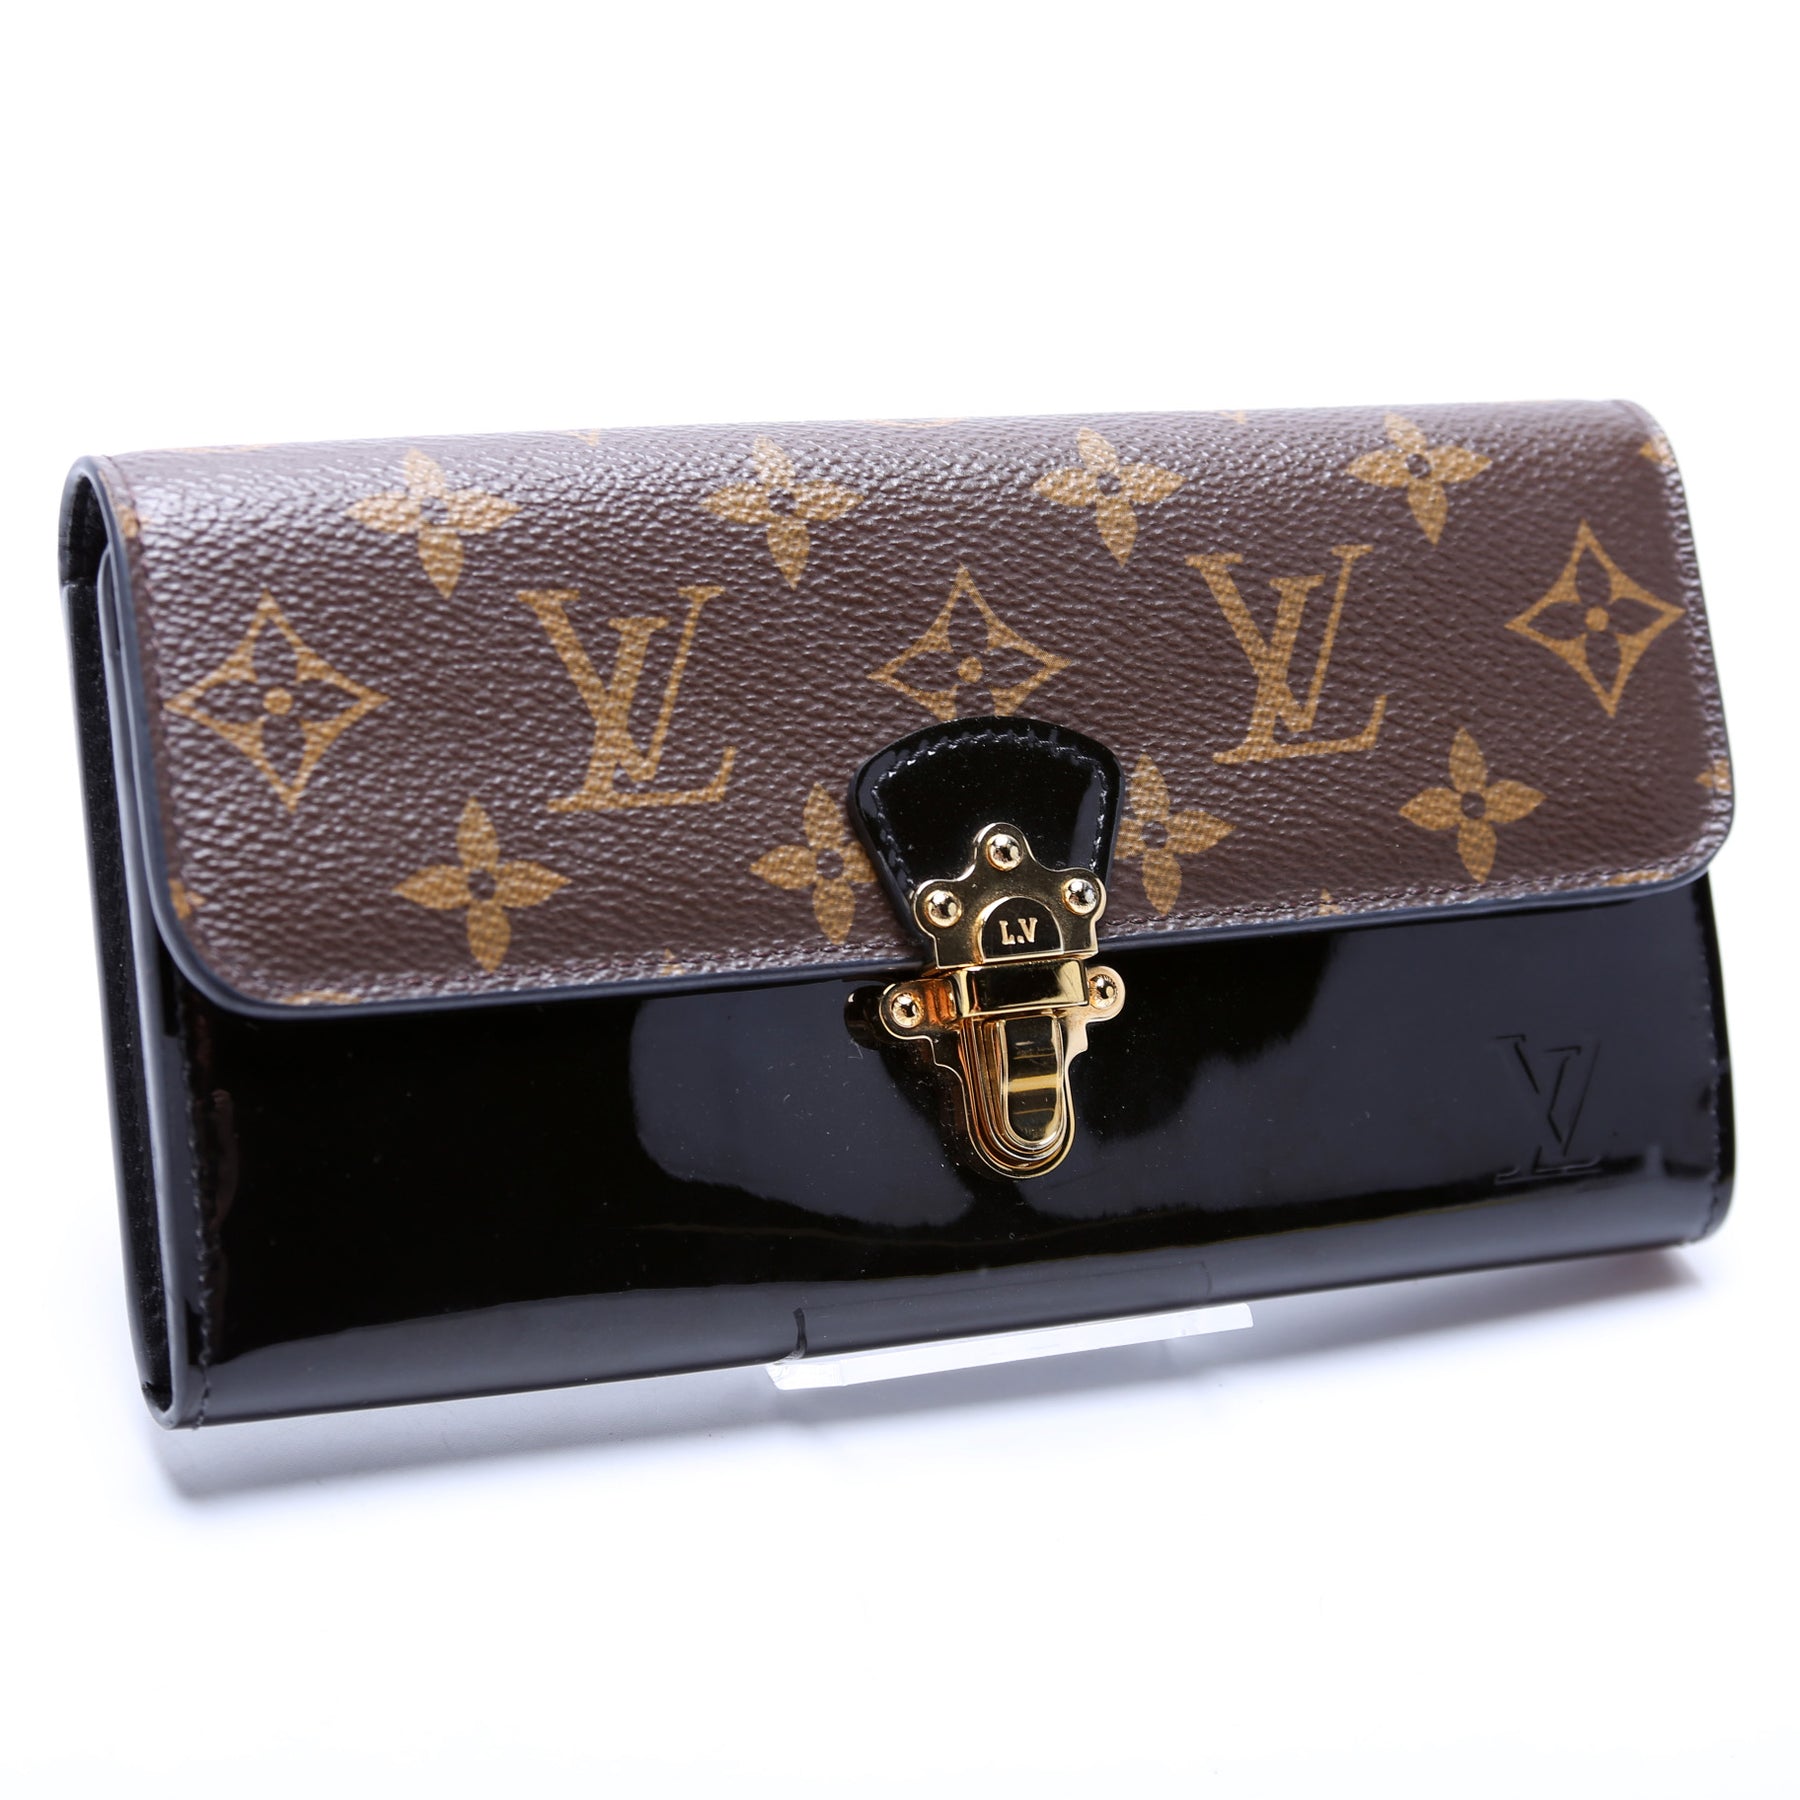 Louis Vuitton Vernis Monogram Cherrywood Chain Wallet